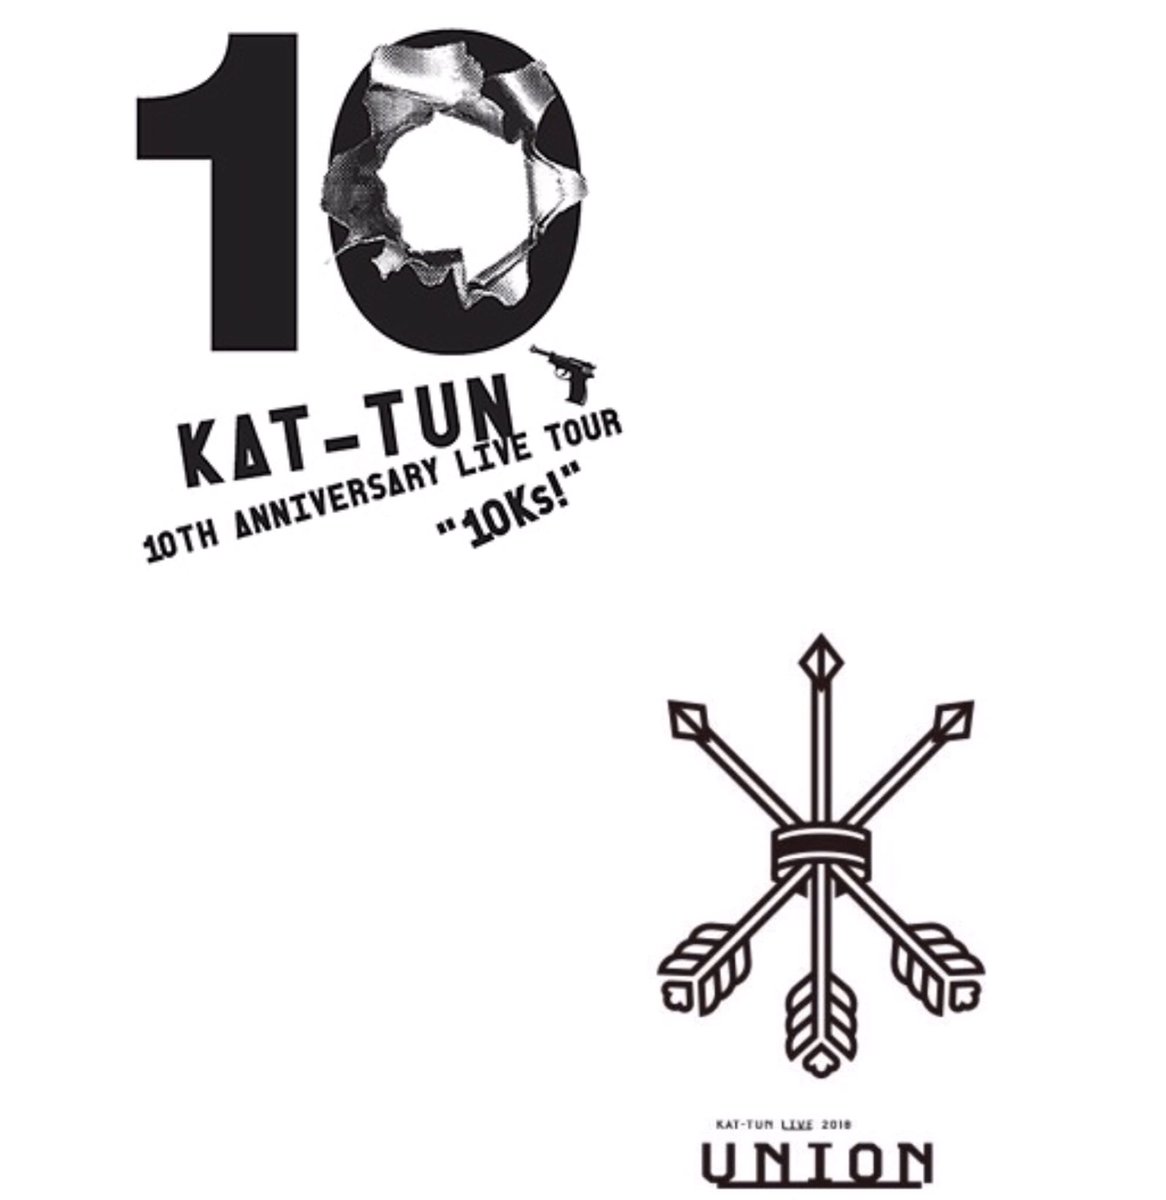 ユキ Pa Twitter Kat Tunコンサート ツアー ロゴ歴 16 16年 Kat Tun 10th Anniversary Live Tour 10ks 18年 Kat Tun Live 18 Union 18年 Kat Tun Live Tour 18 Cast 19年 Kat Tun Live Tour 19 Ignite 21年 15th Anniversary